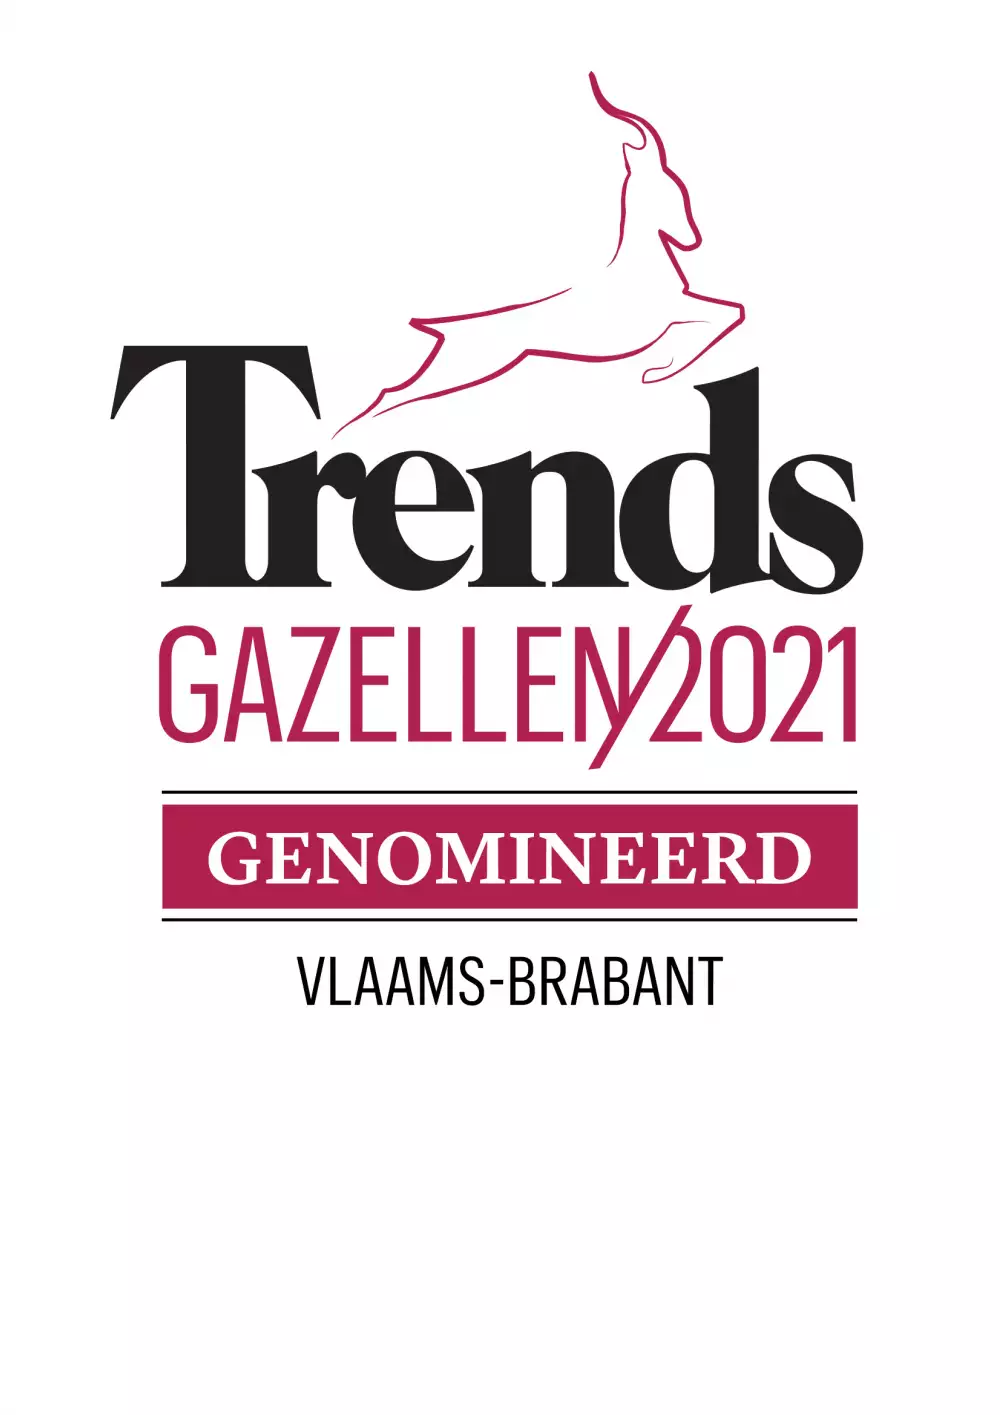 Genomineerd embleem Vl Brabant